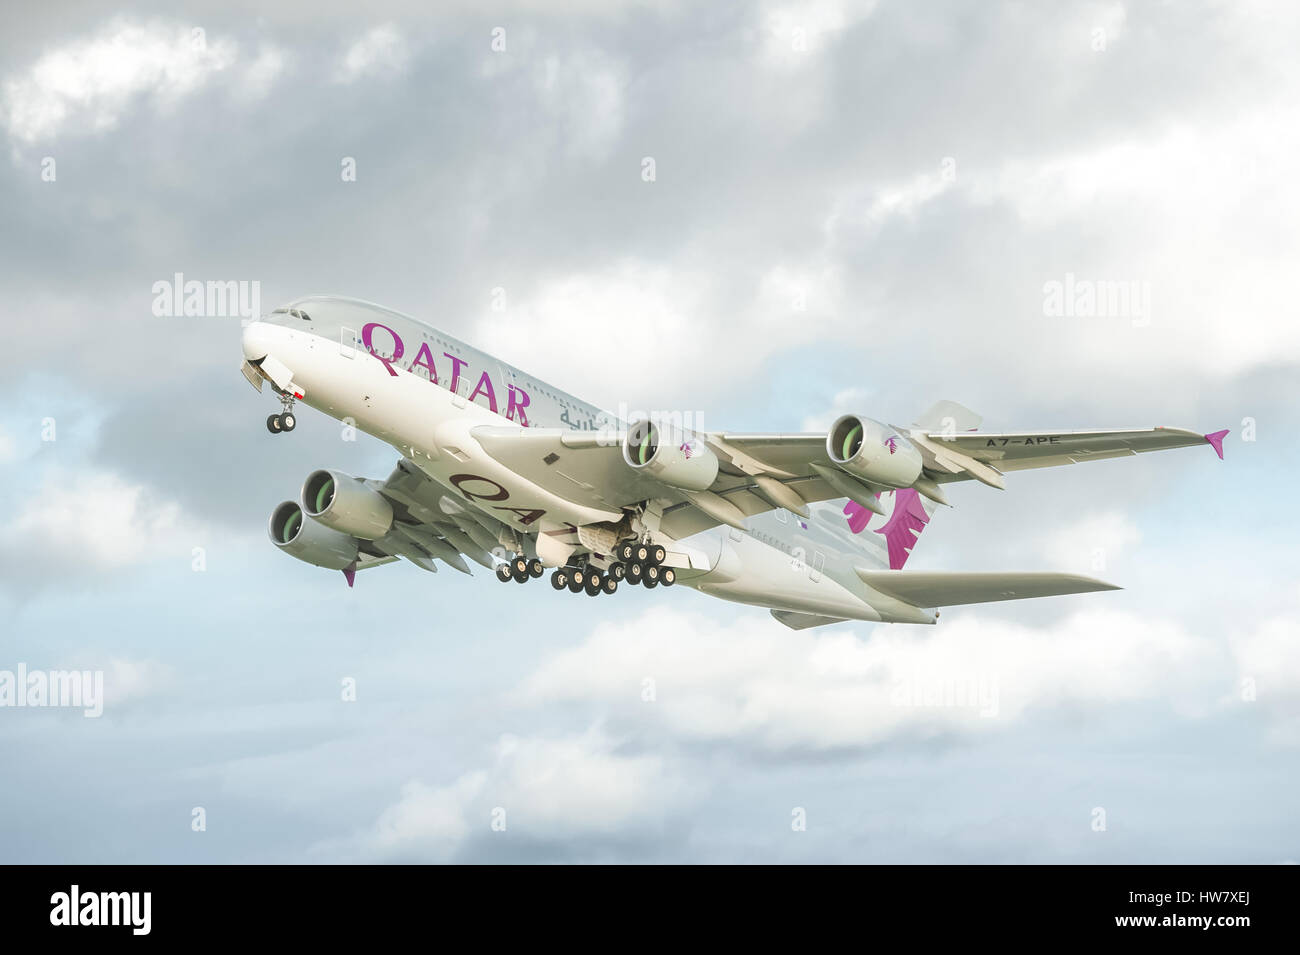 Qatar Airways Airbus A380 decollo catturare gli ultimi raggi di sole prima pioggia rotoli in oltre l'aeroporto di Heathrow di Londra, Regno Unito Foto Stock